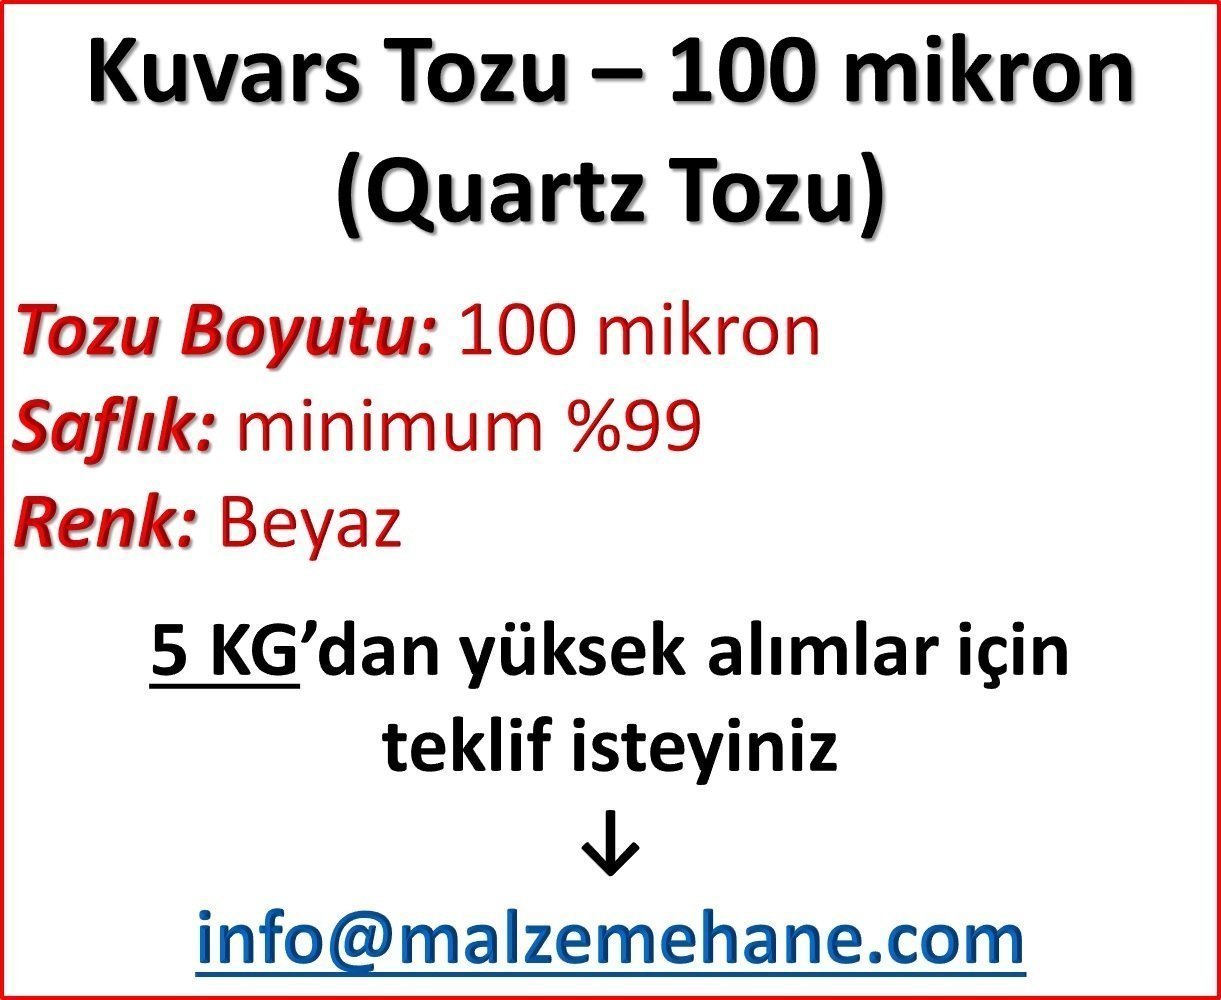 Kuvars Tozu (Ouartz Tozu) 140 mesh